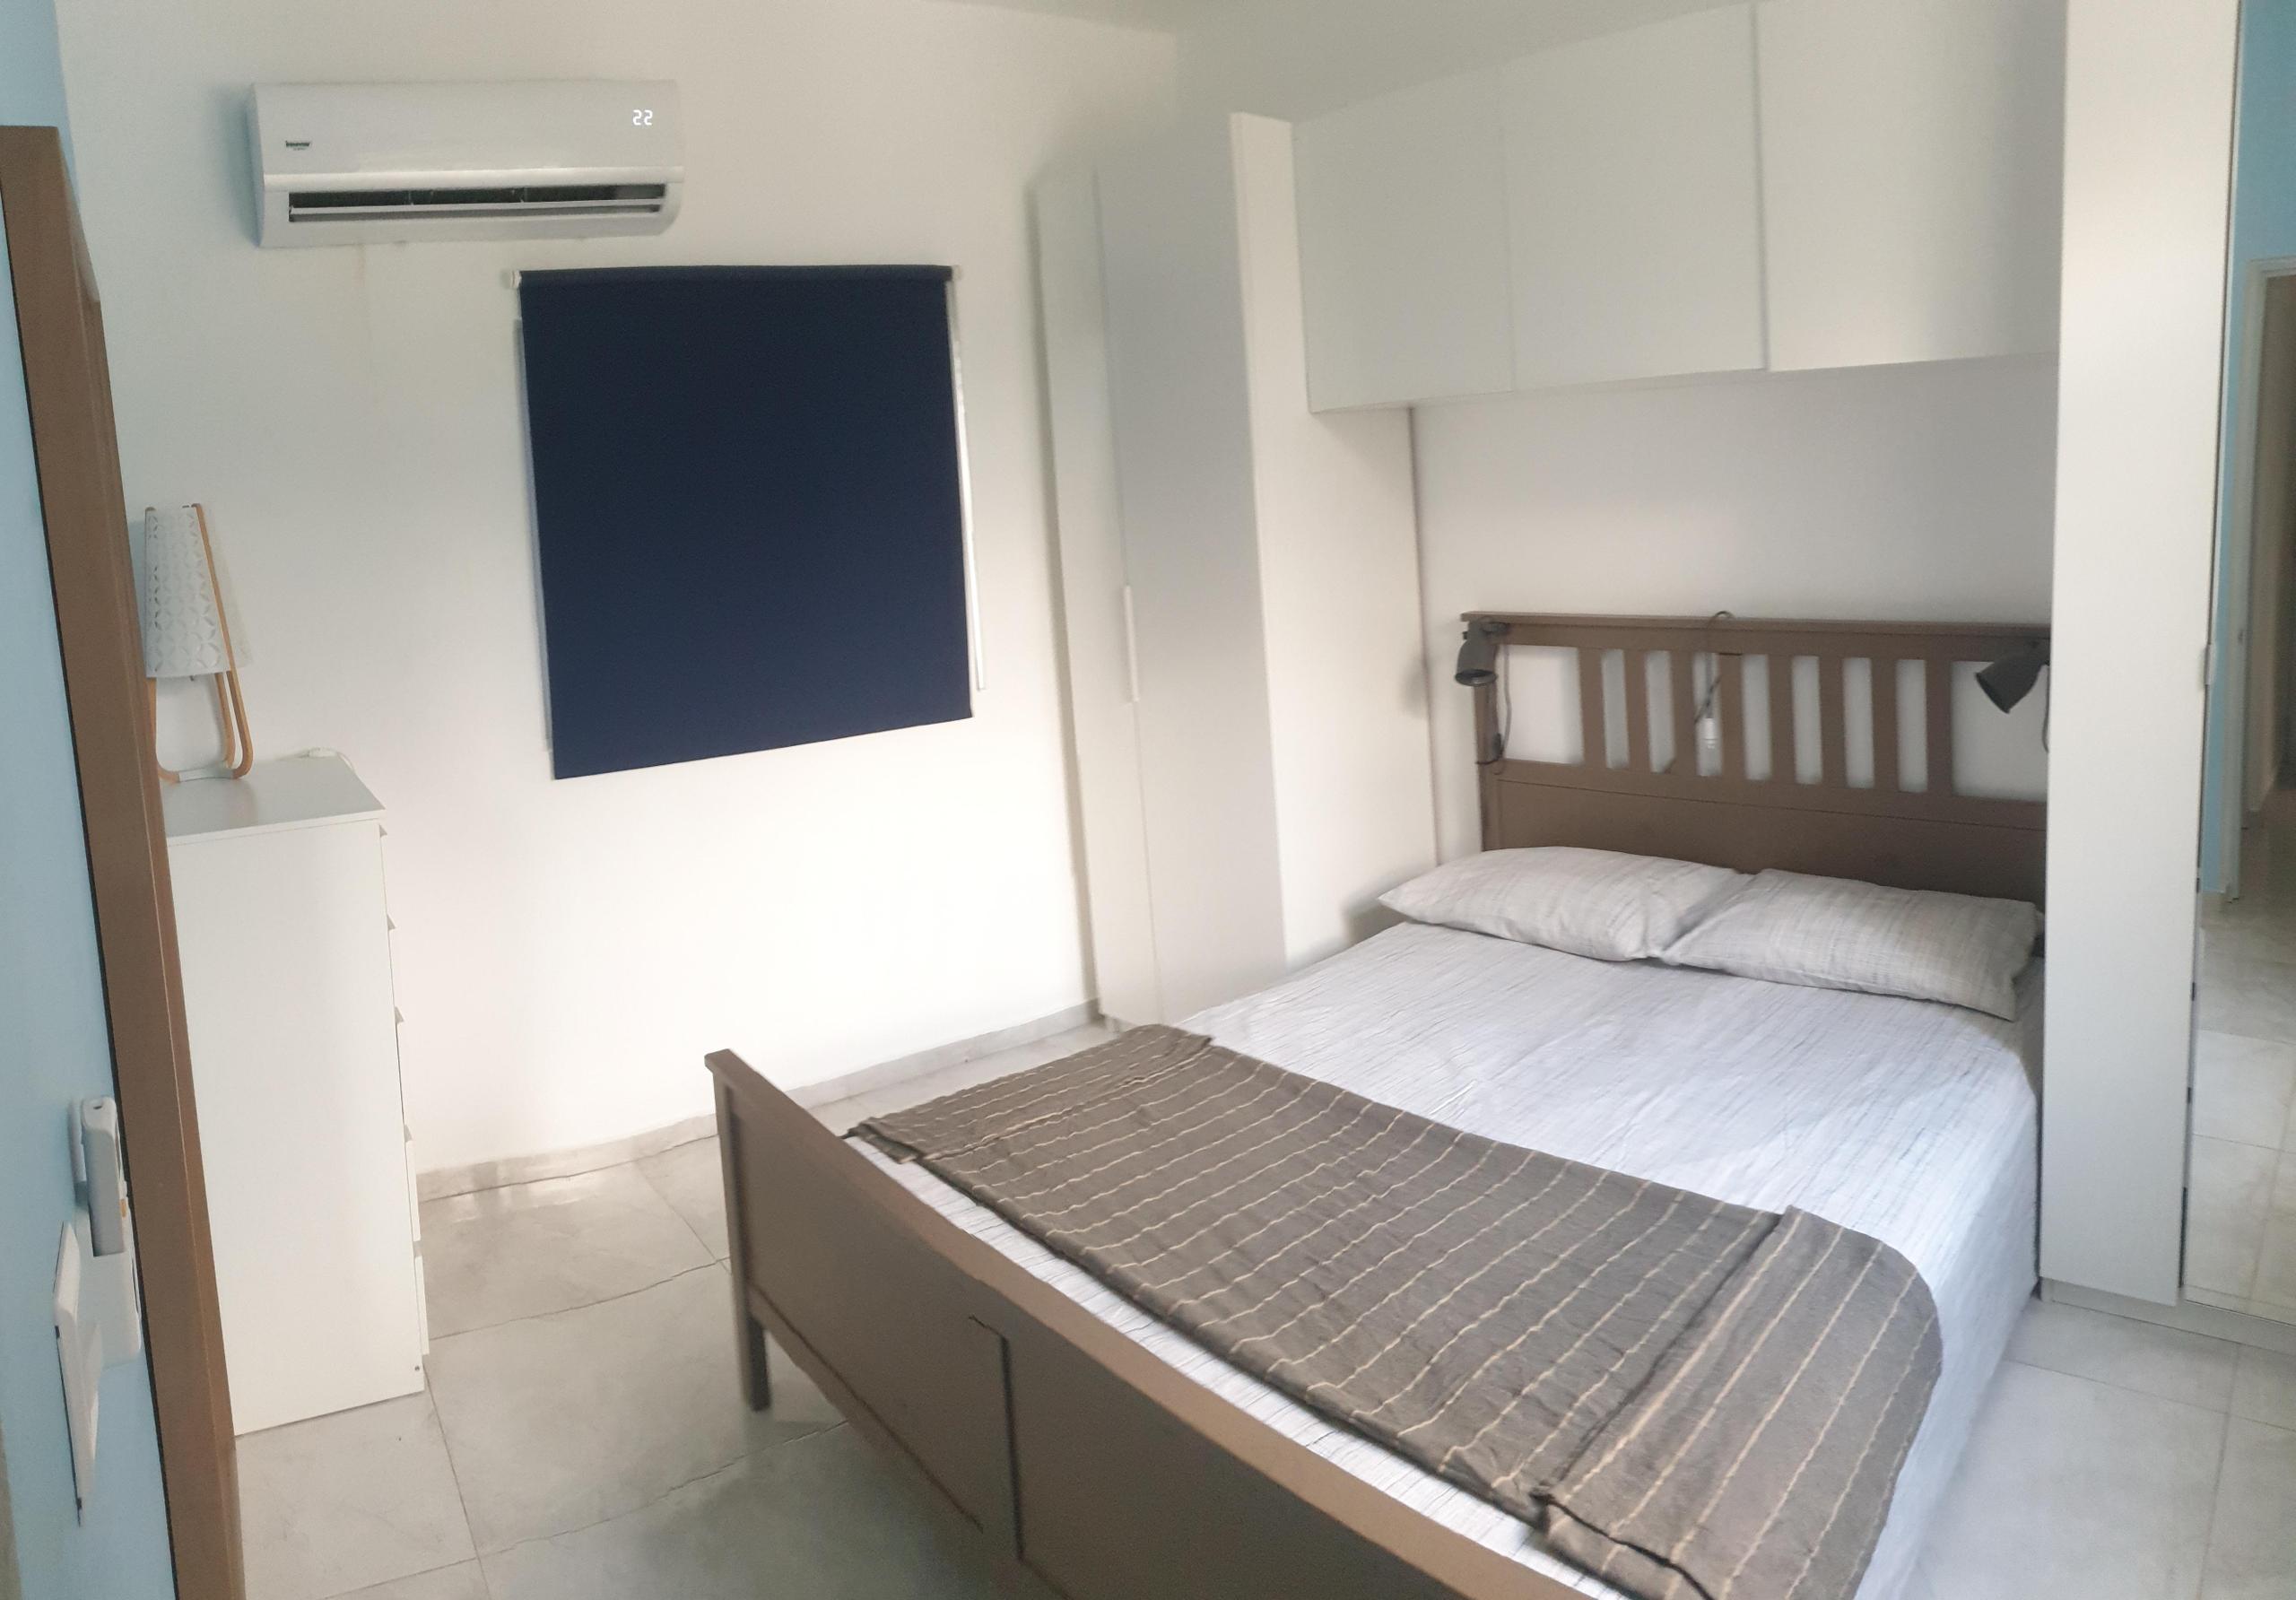 Camera da letto con tende oscuranti, aria condizionata e ventilatore a soffitto